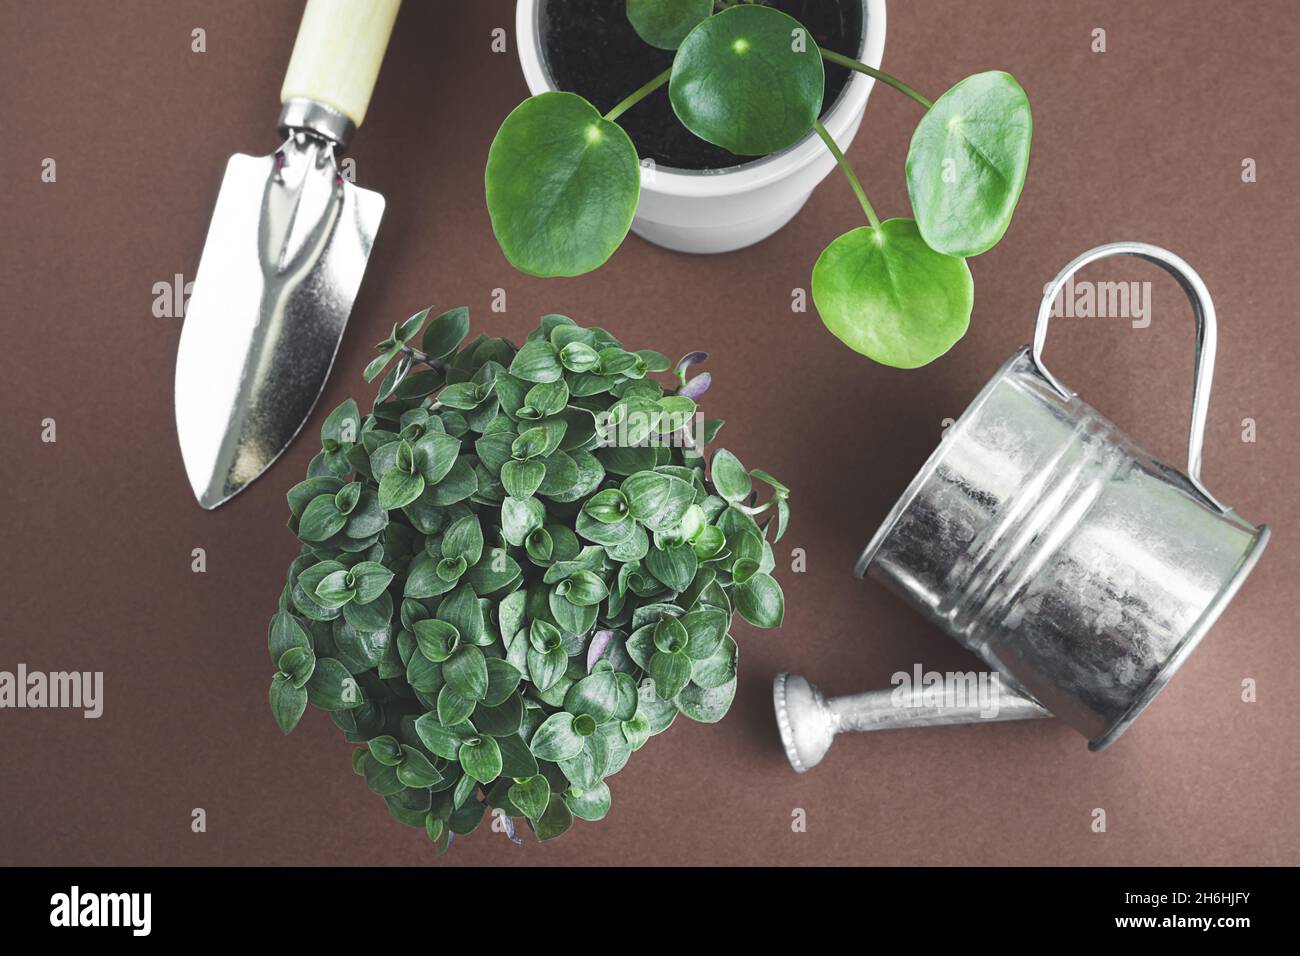 Junge Heimpflanzen von pilea und Callisia und Gartengeräte auf dunklem Hintergrund, Draufsicht, Verbindung mit der Natur und Home-Gardening-Konzept Stockfoto